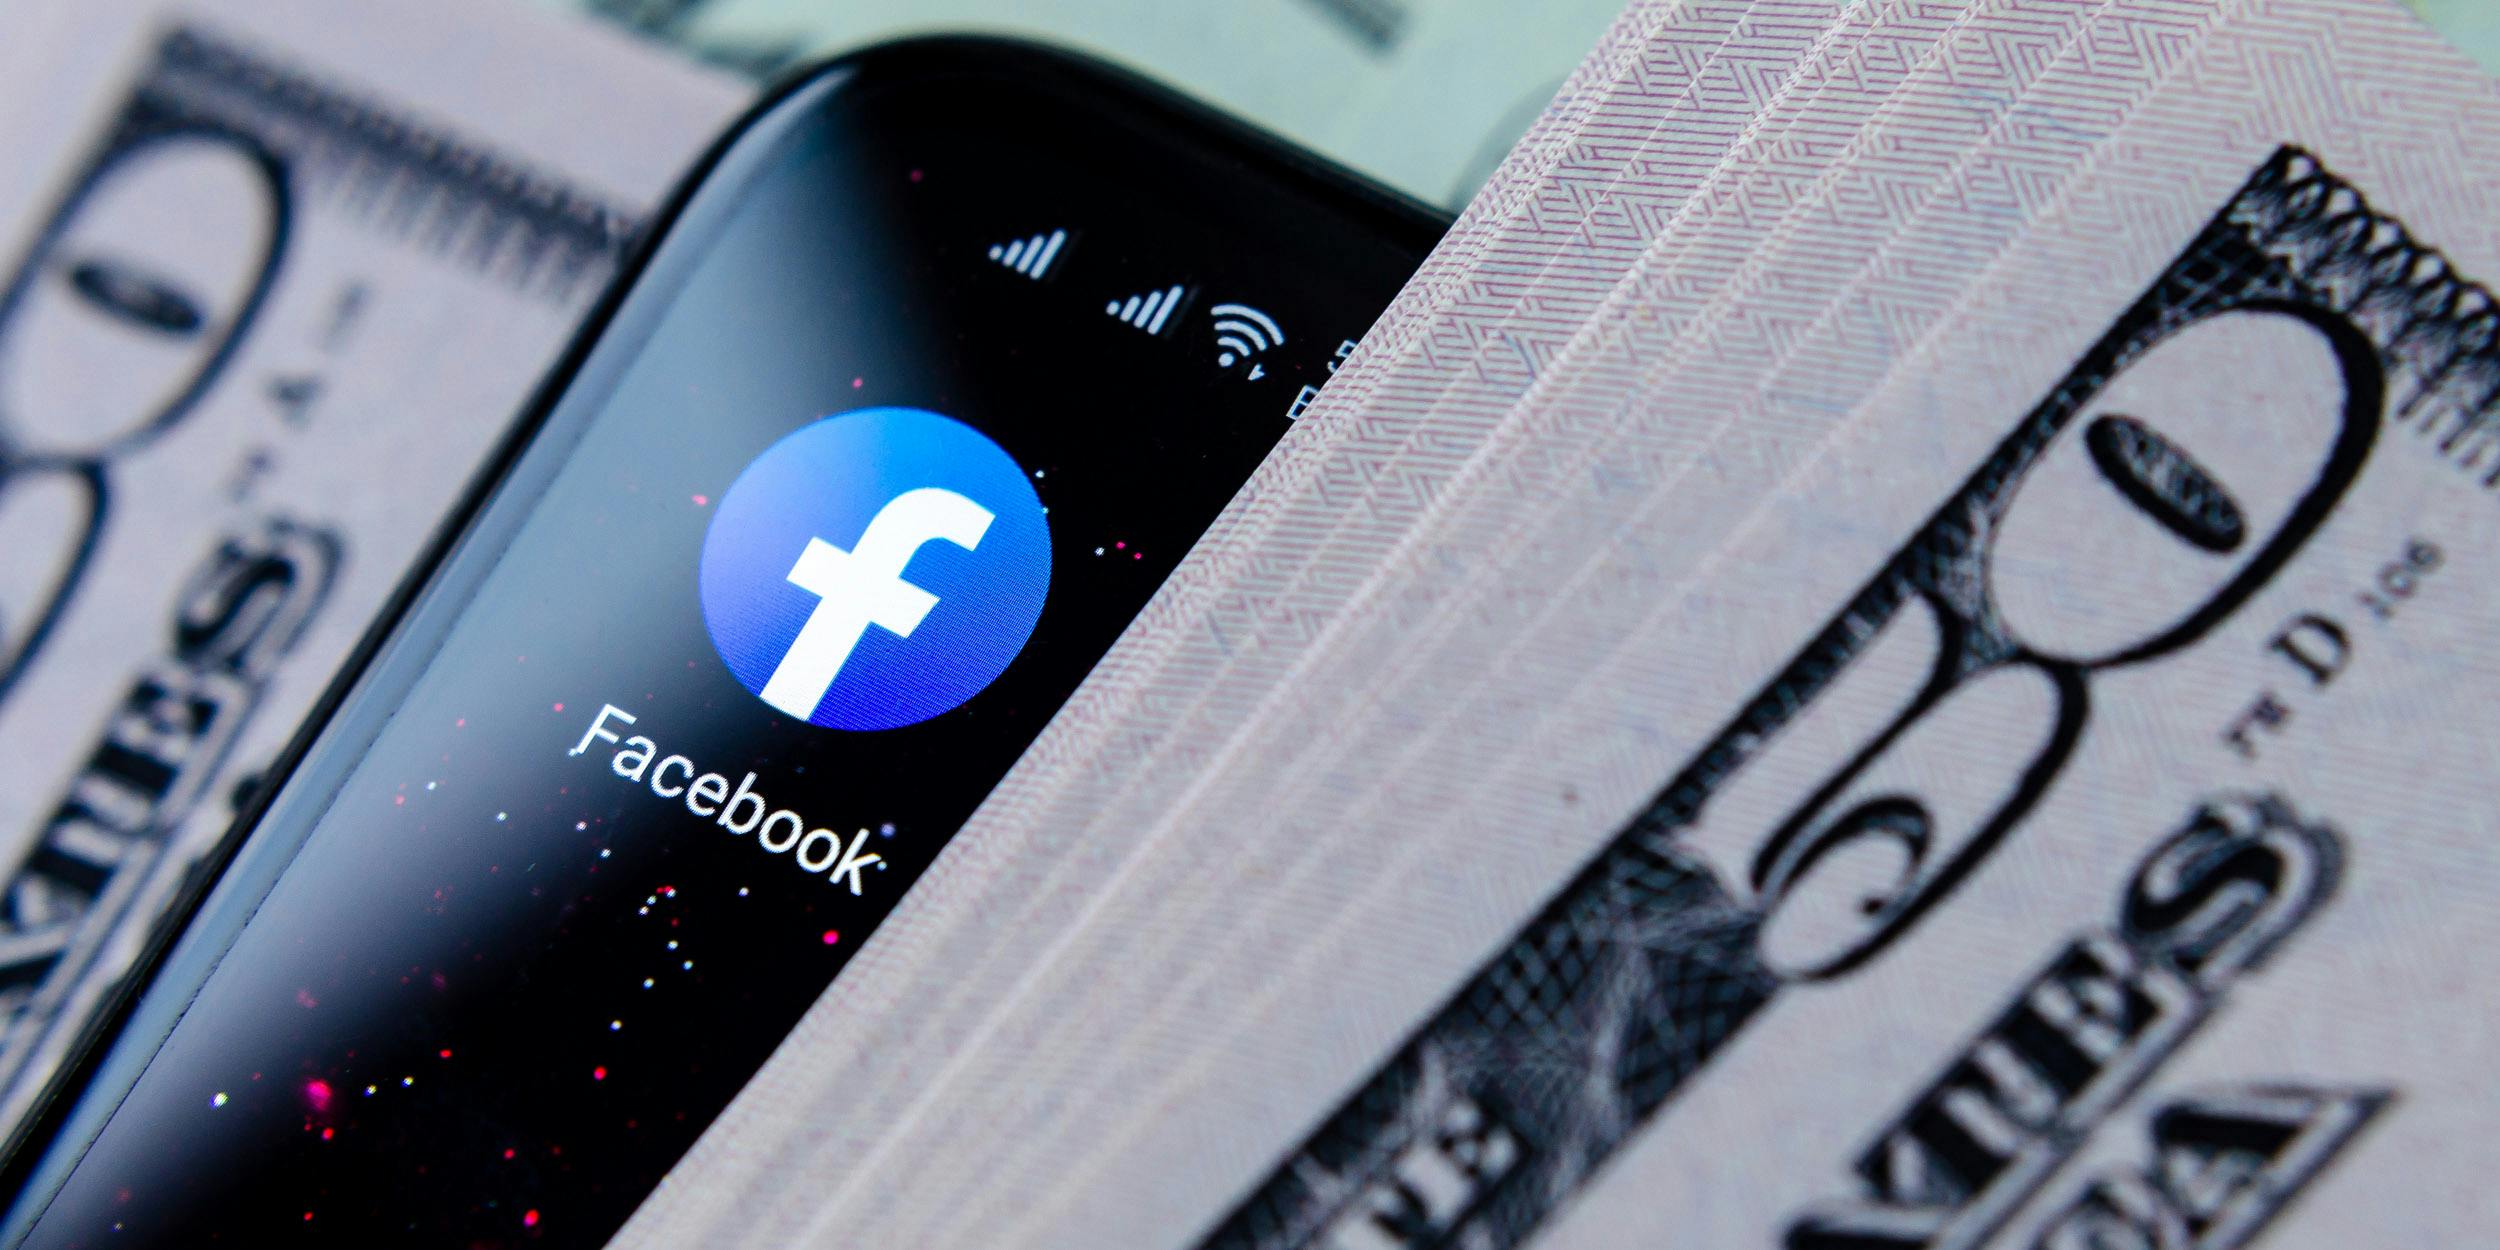 A smartphone showing the Facebook app in between stacks of $50 bills.